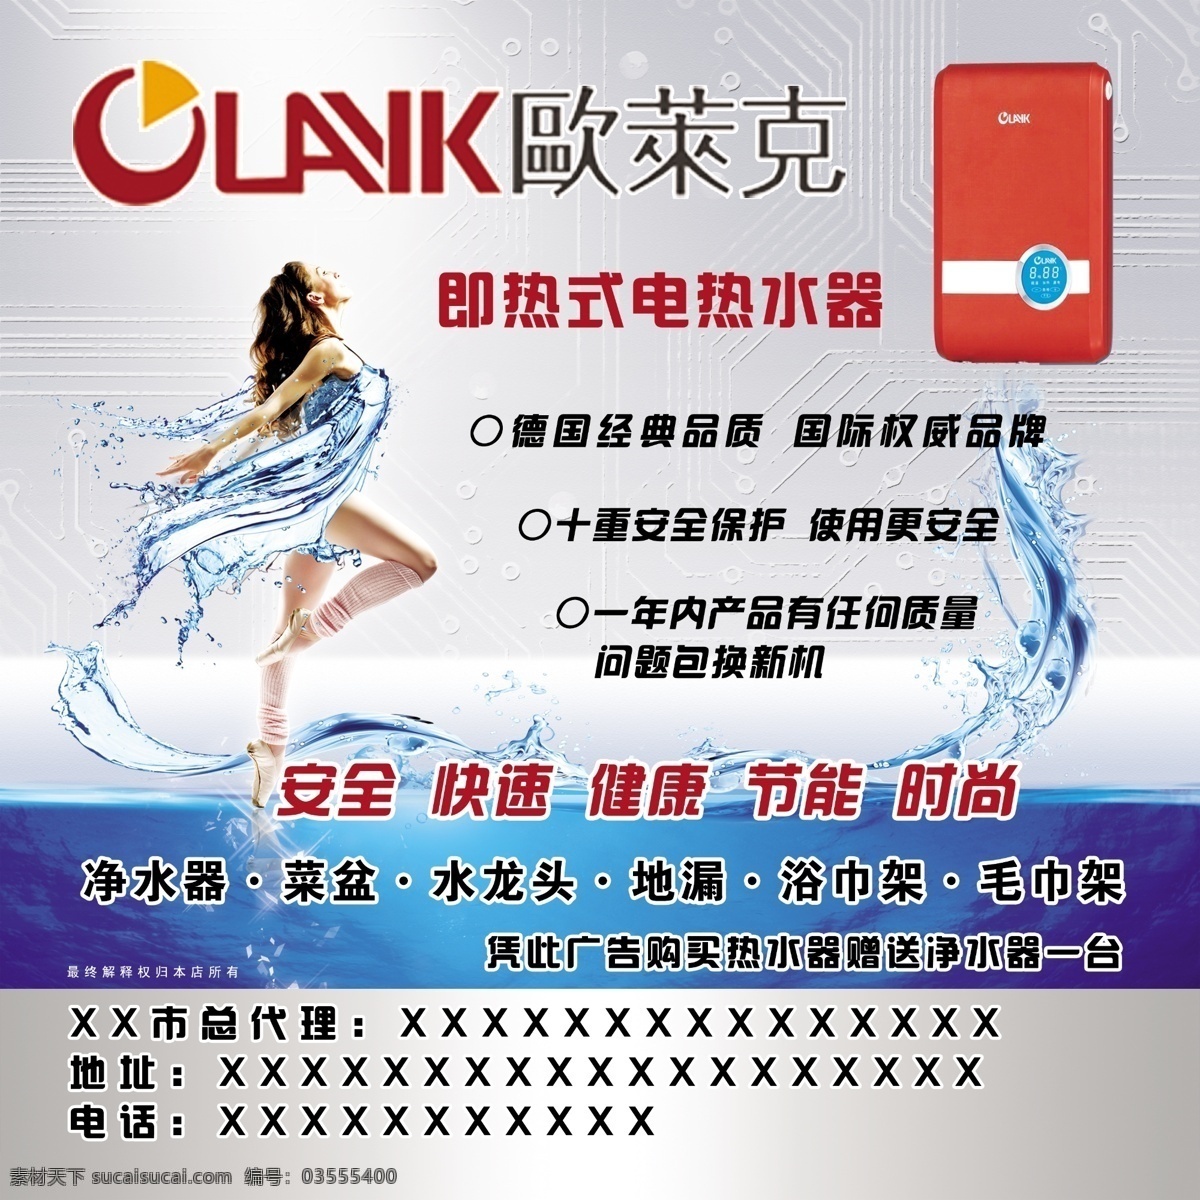 欧莱克 欧莱克热水器 热水器广告 欧莱克标志 欧莱克广告 热水器 热水器宣传 分层 源文件